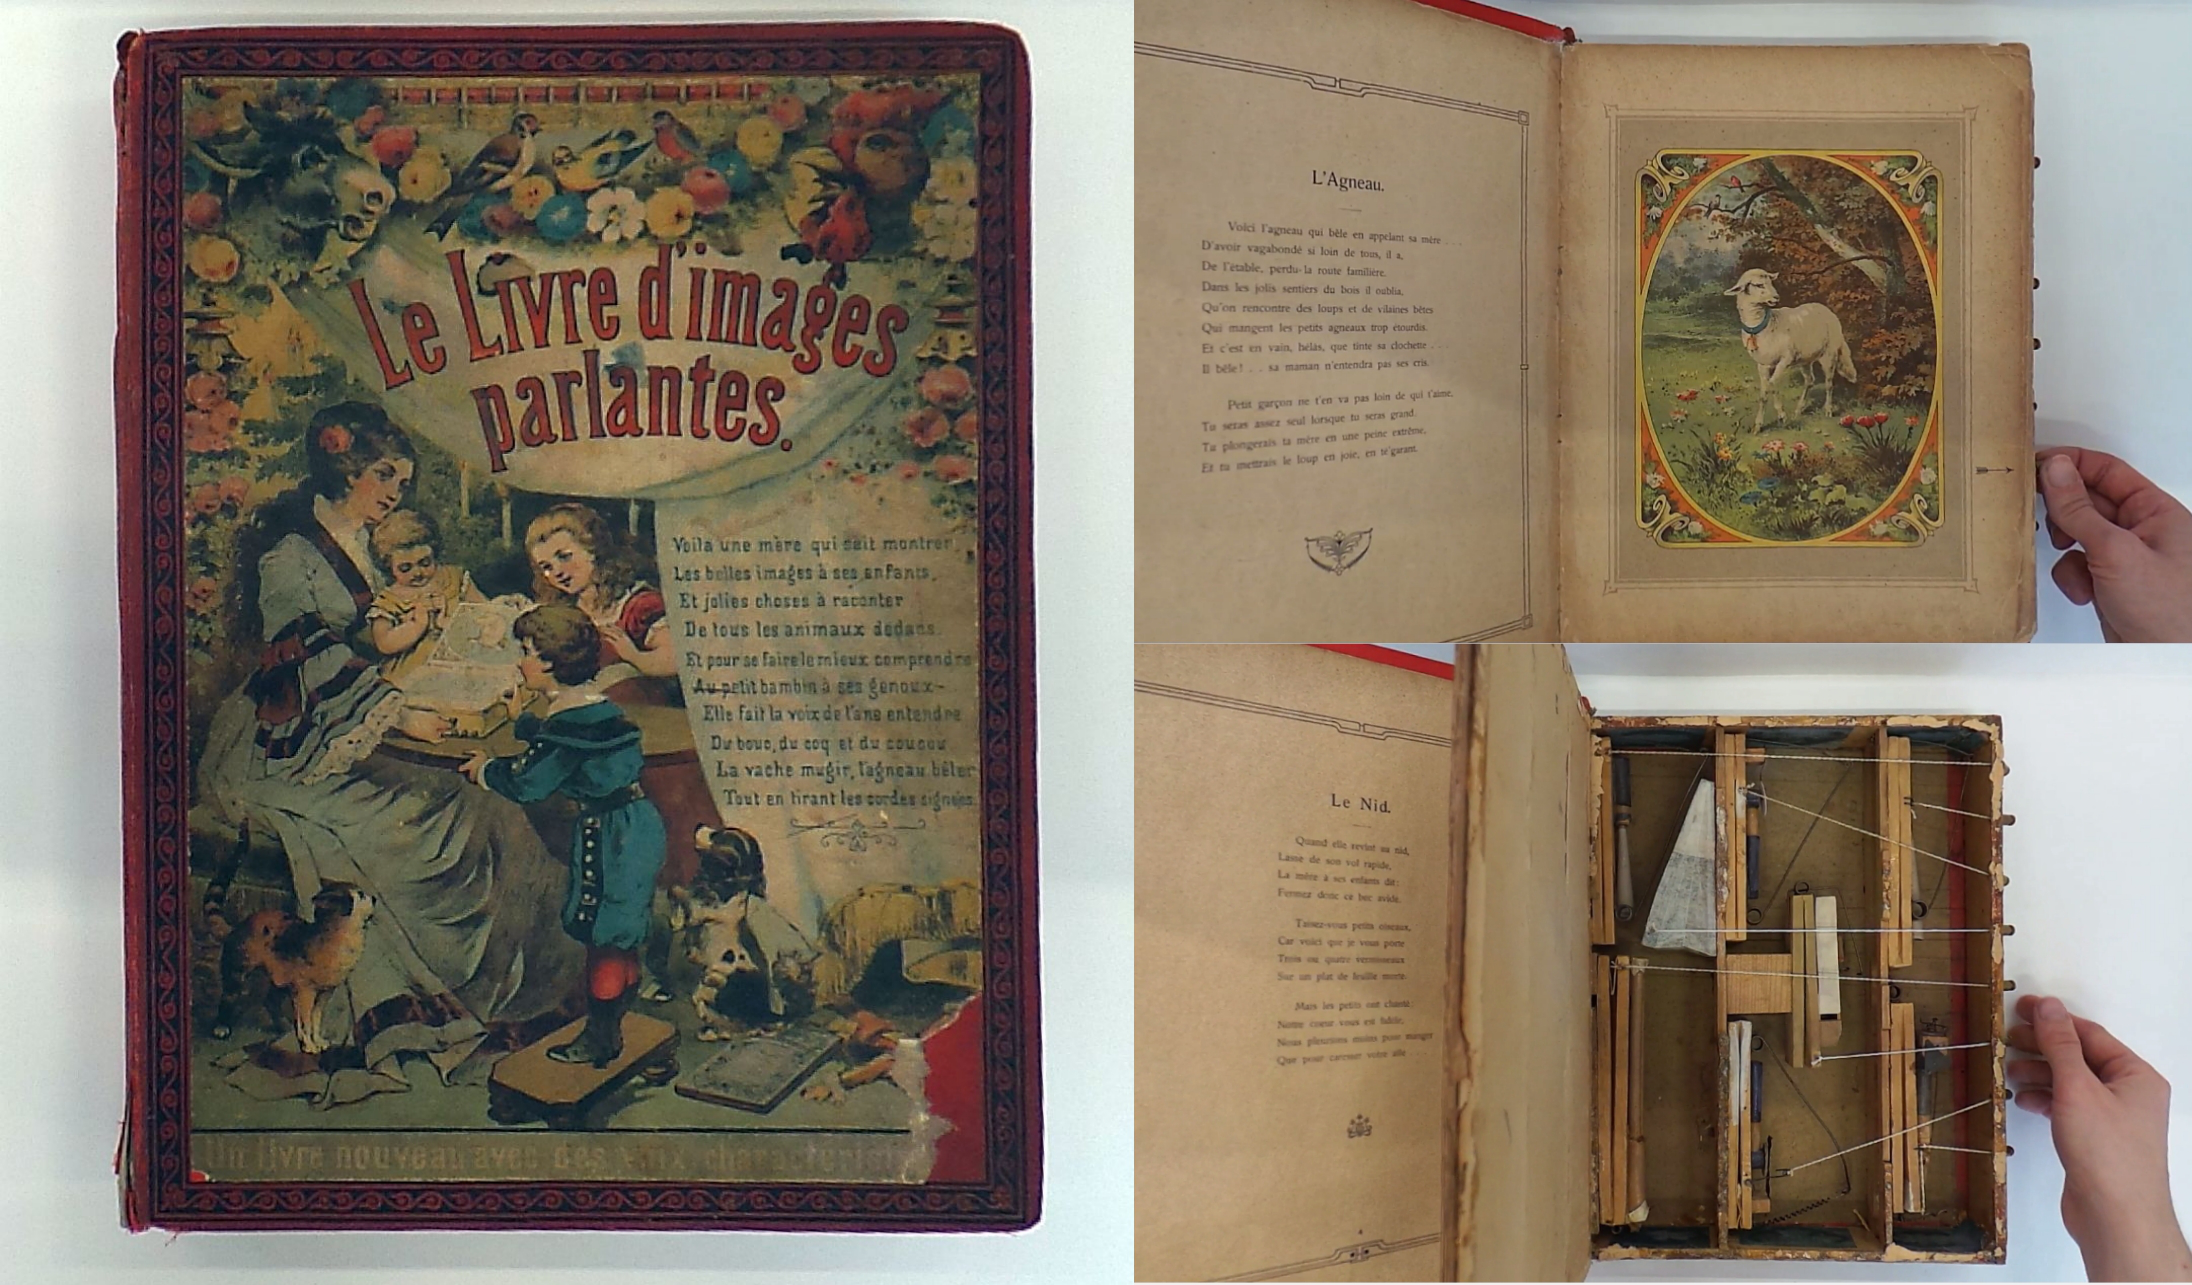 Le livre d’images parlantes (1880)